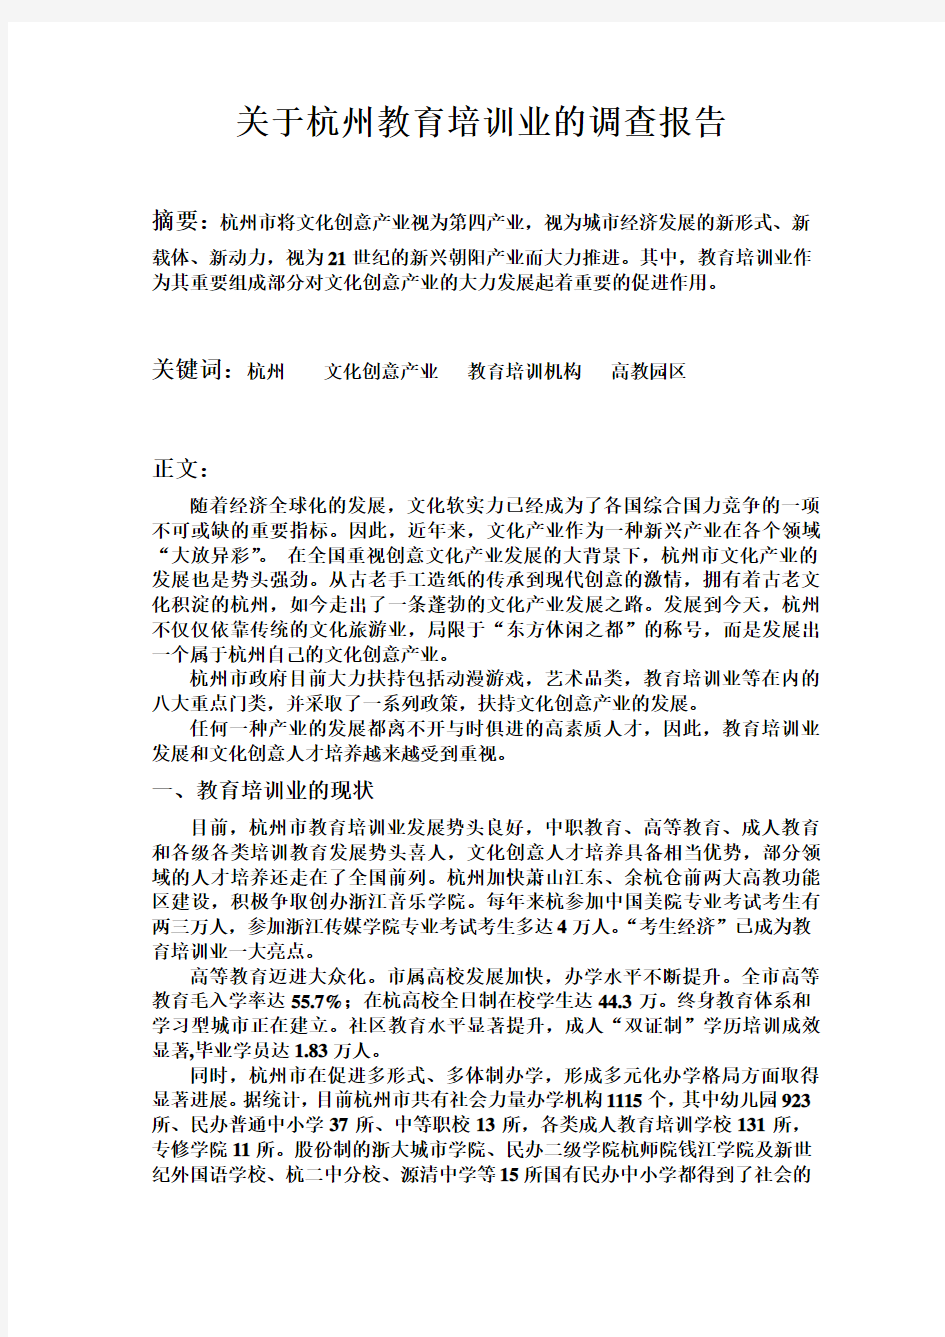 关于杭州教育培训业的调查报告(同名6699)